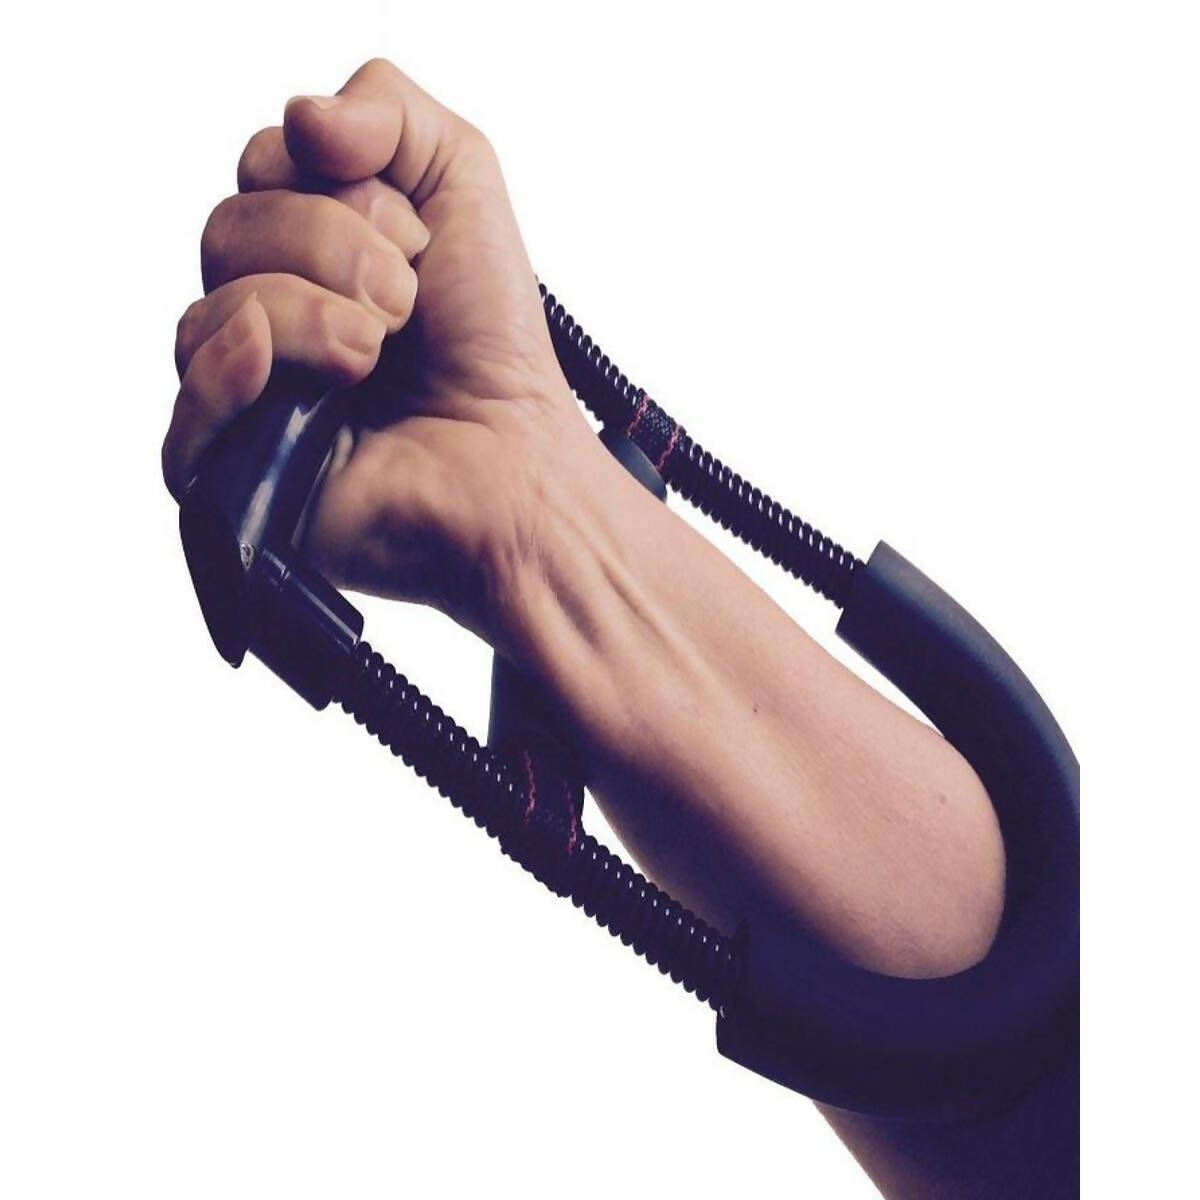 Wrist and Strength Exerciser Forearm Grip Strengthener Developer